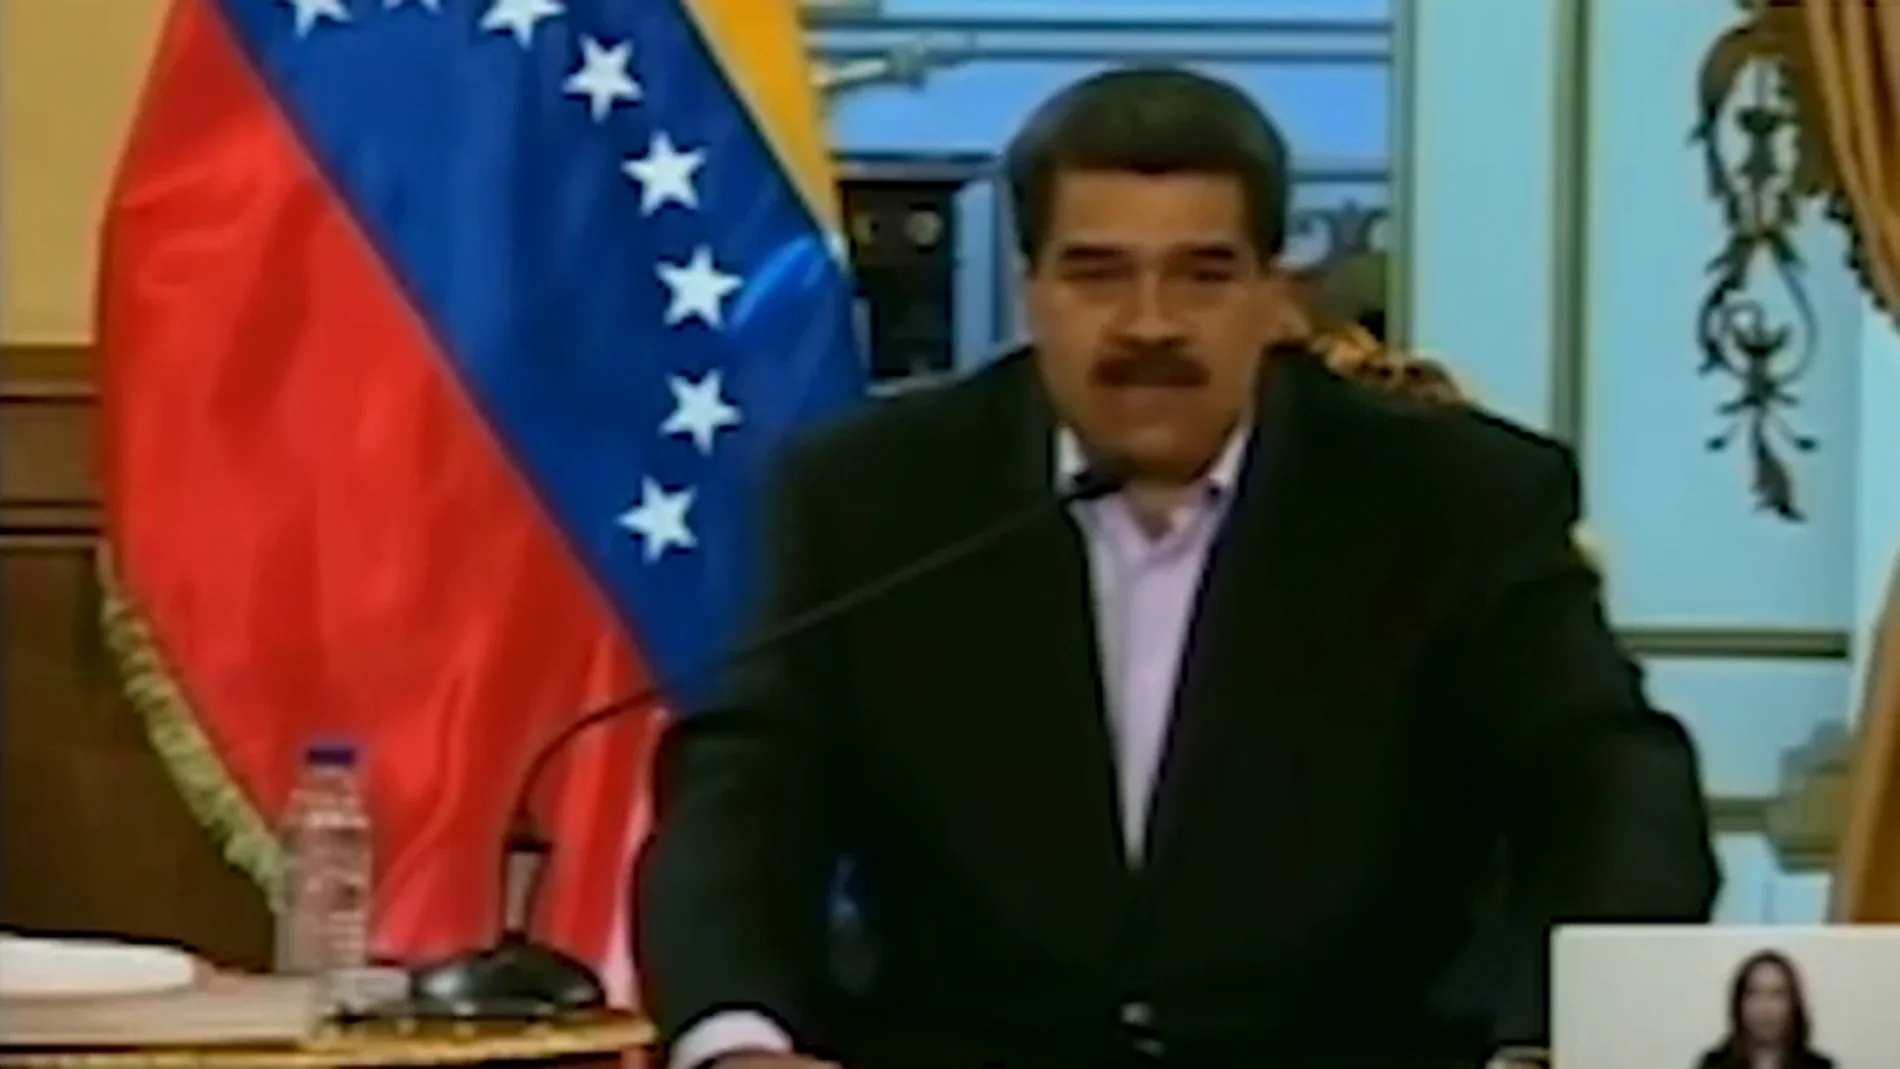 El vídeo de Maduro amenazando en 'inglés' a Donald Trump que se ha vuelto viral: "Hands off Venezuela de inmediati"